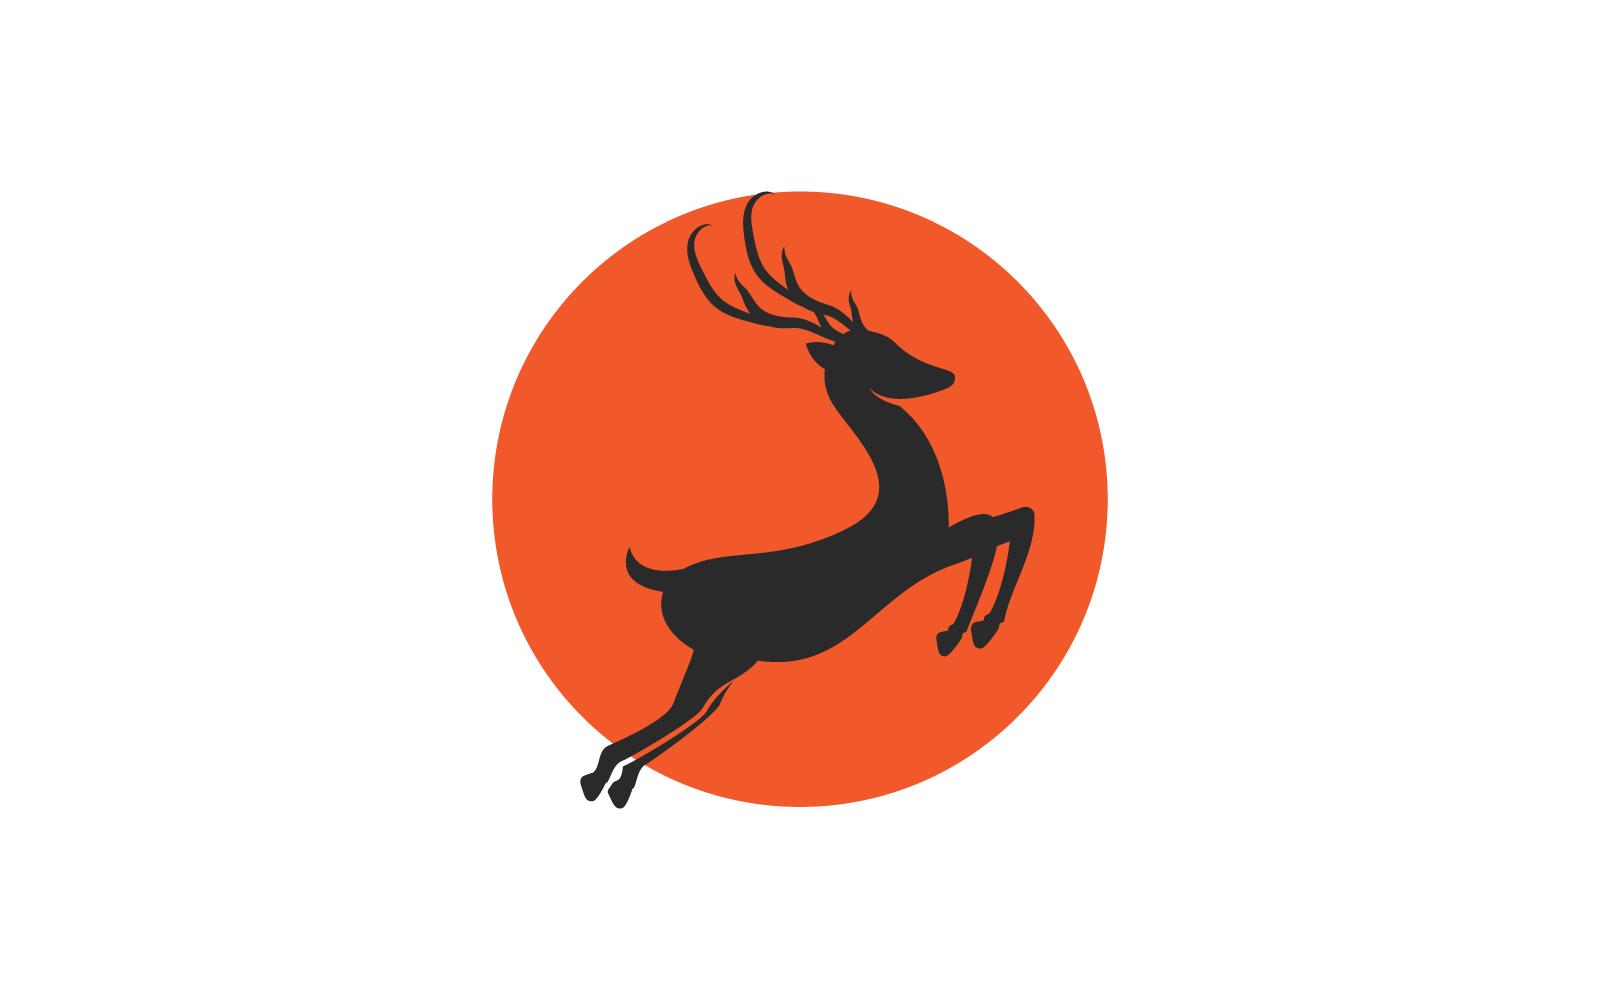 Deer antler ilustration design logo icon vector